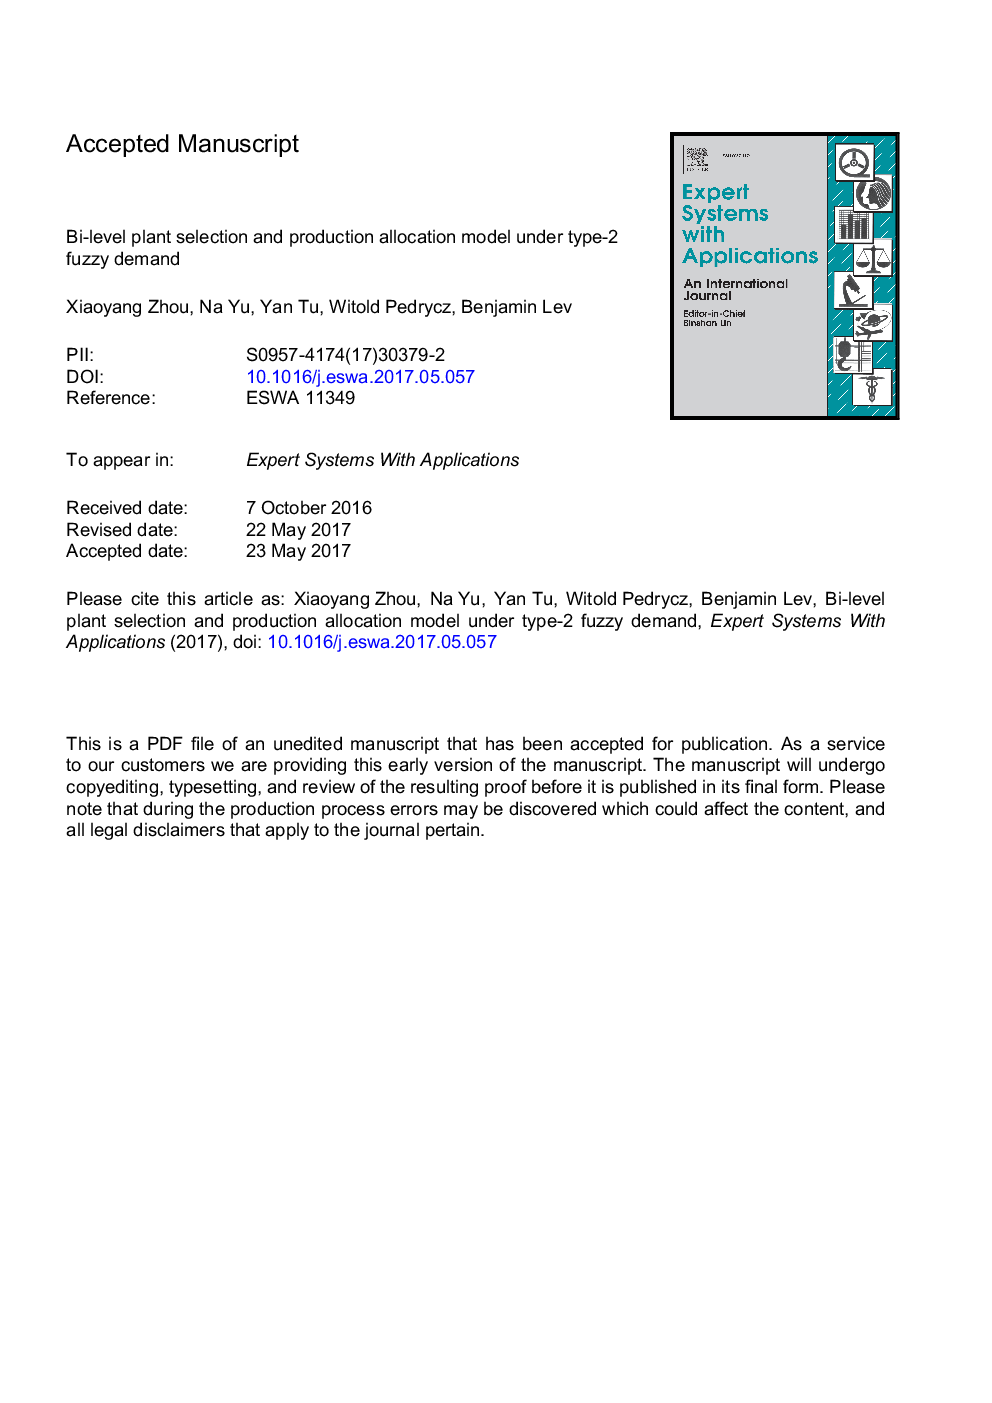 انتخاب نوع بوته و مدل تخصیص تولید در تقاضای فازی نوع 2 